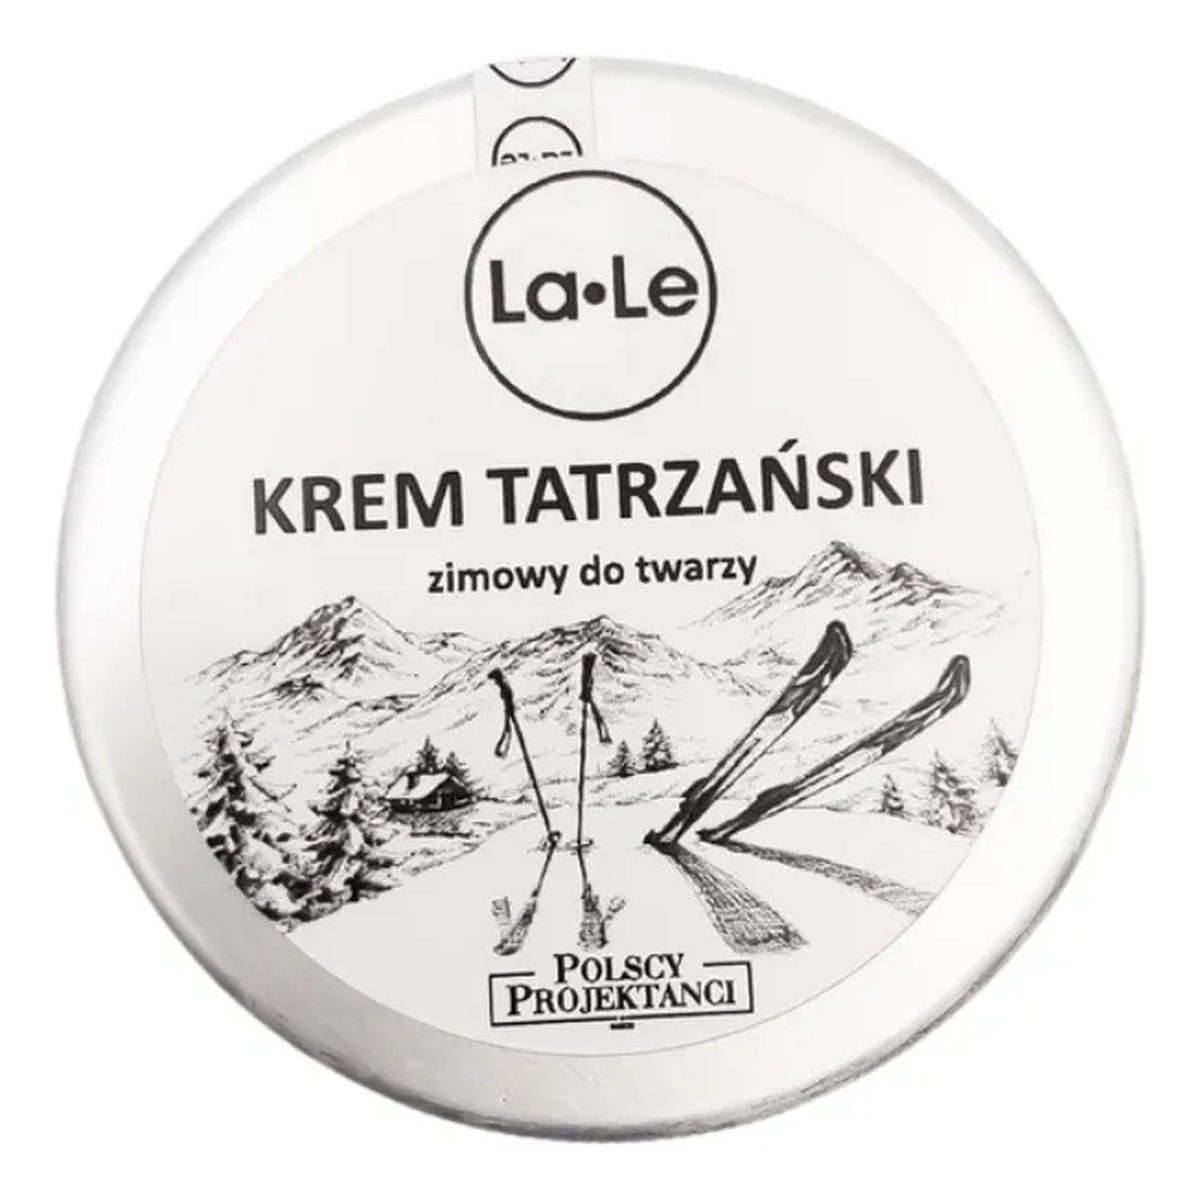 La-Le Krem tatrzański zimowy do twarzy 100ml